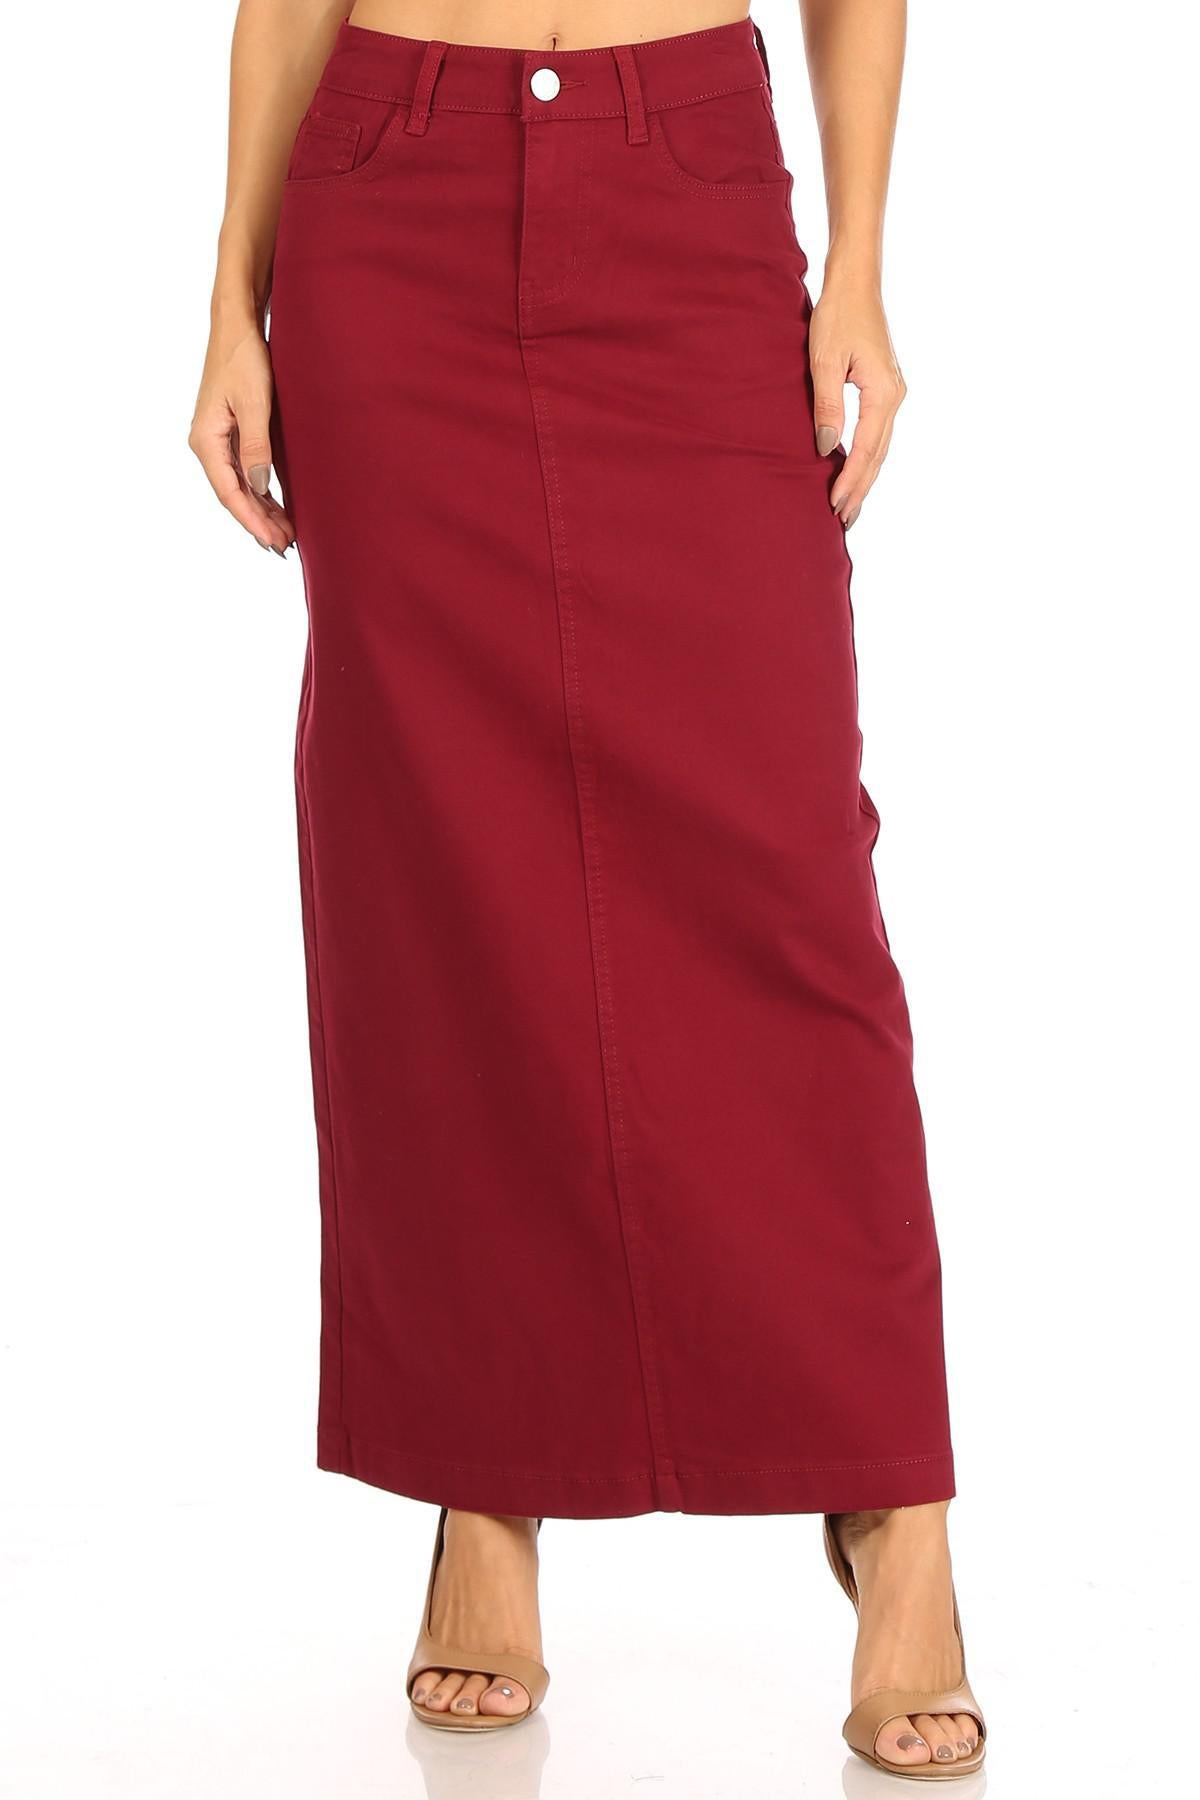 Ava Long Color Denim Skirt (Wine)